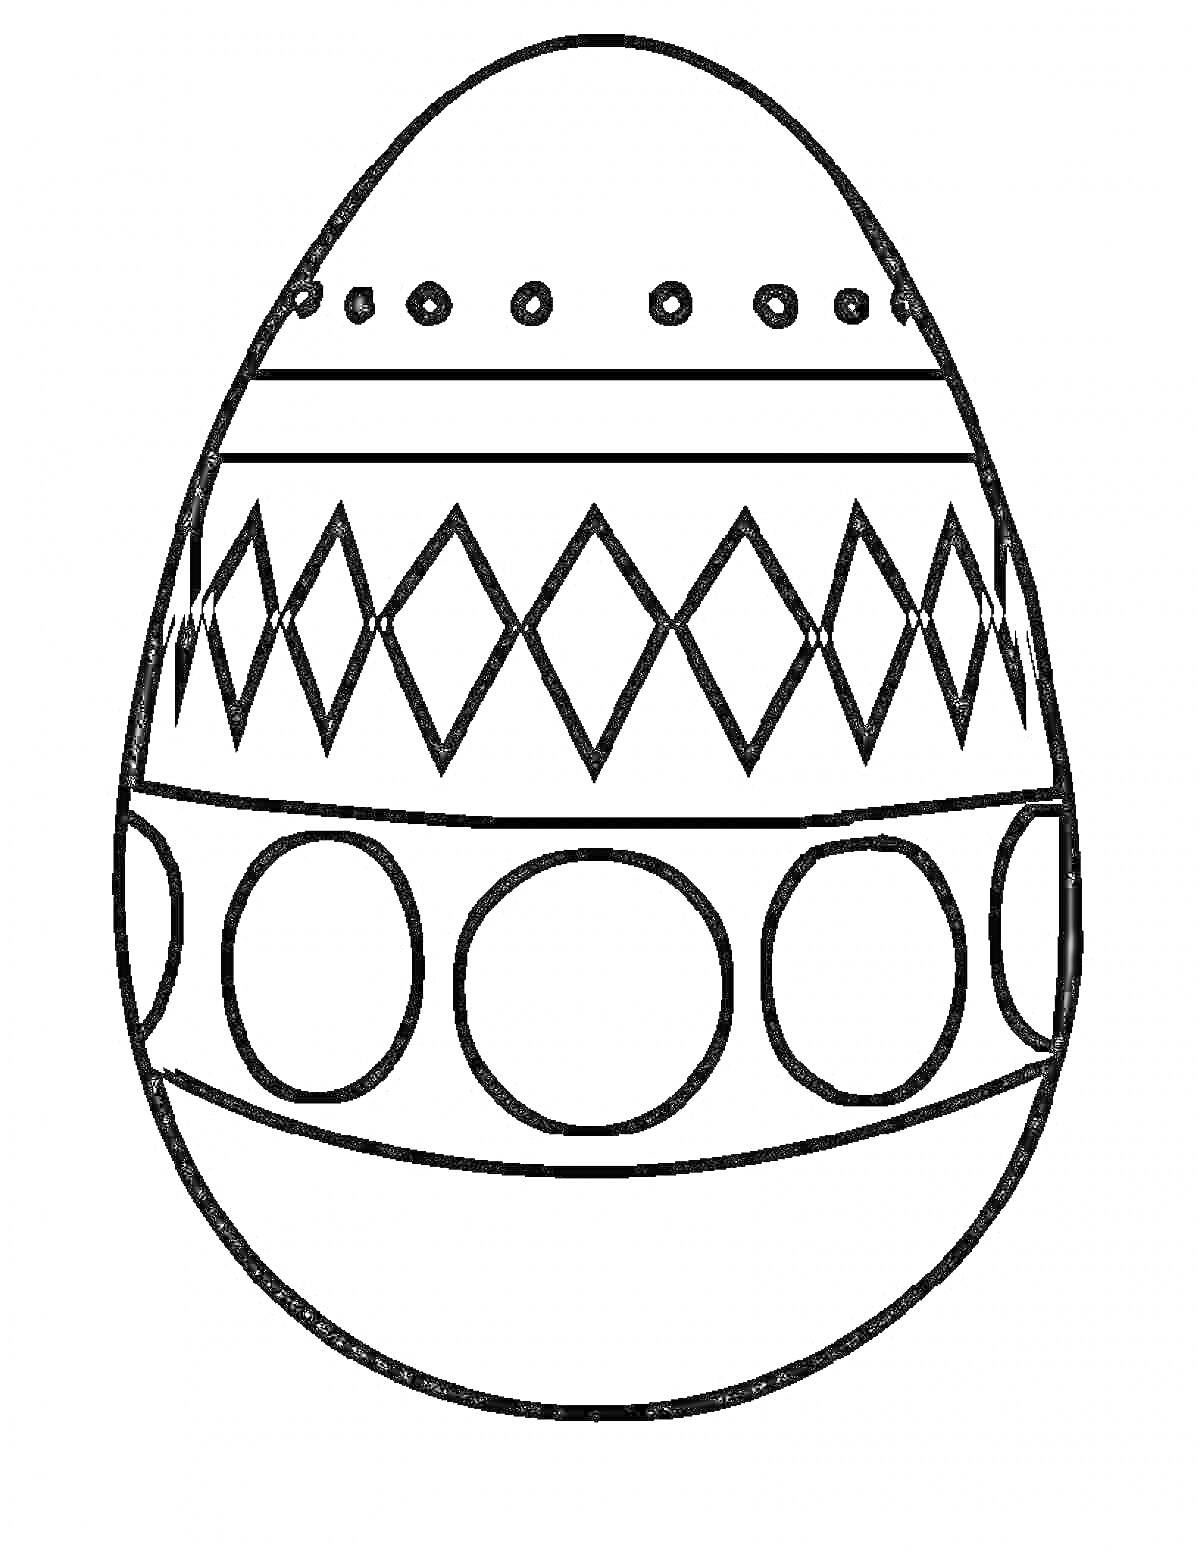 Пасхальное яйцо с узорами из точек, ромбов и кругов